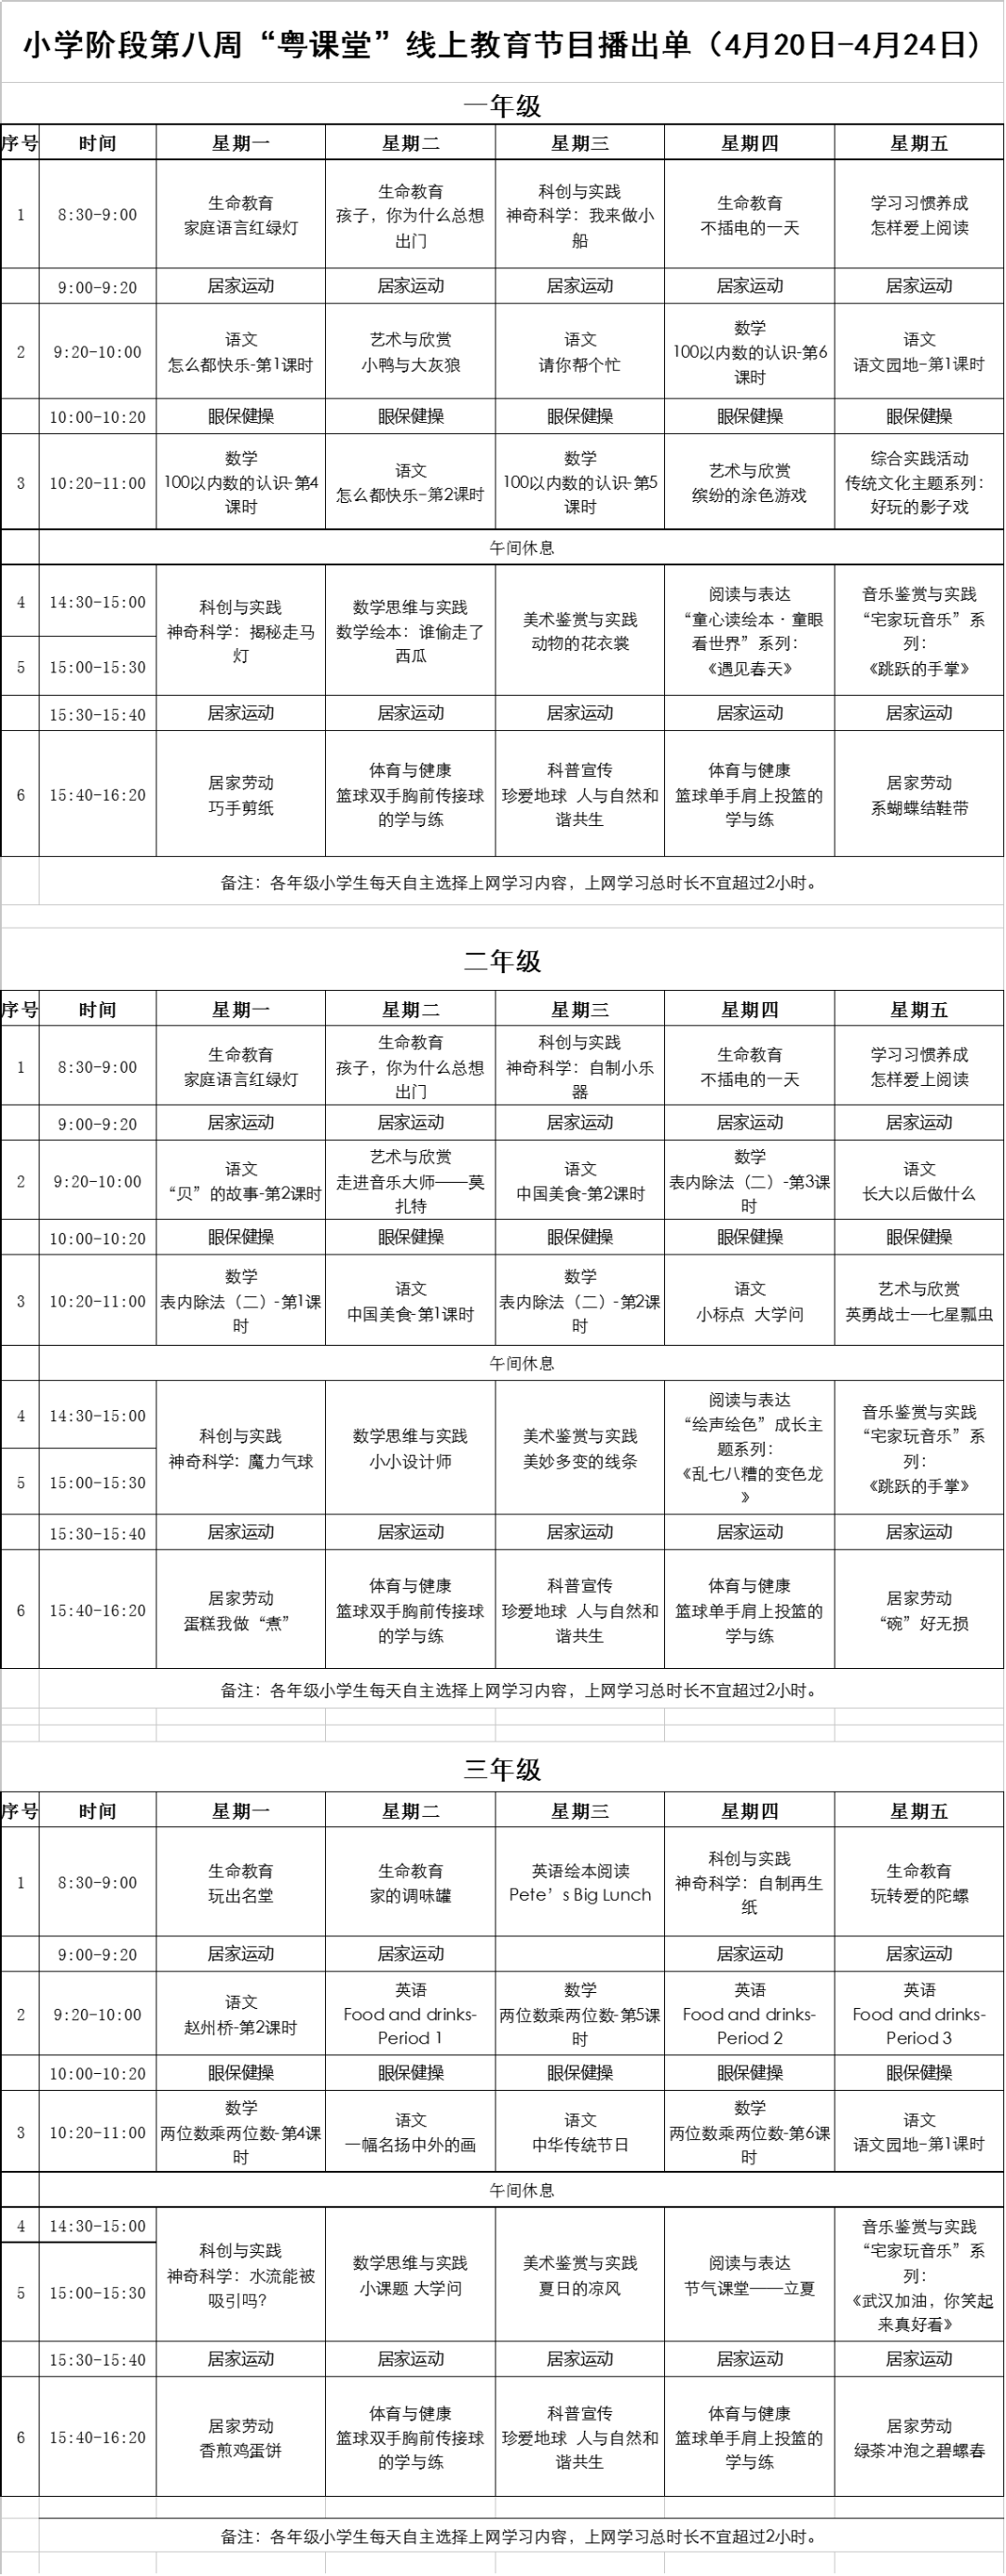 广东中小学“粤课堂”课程表完整版公布（4月20日1